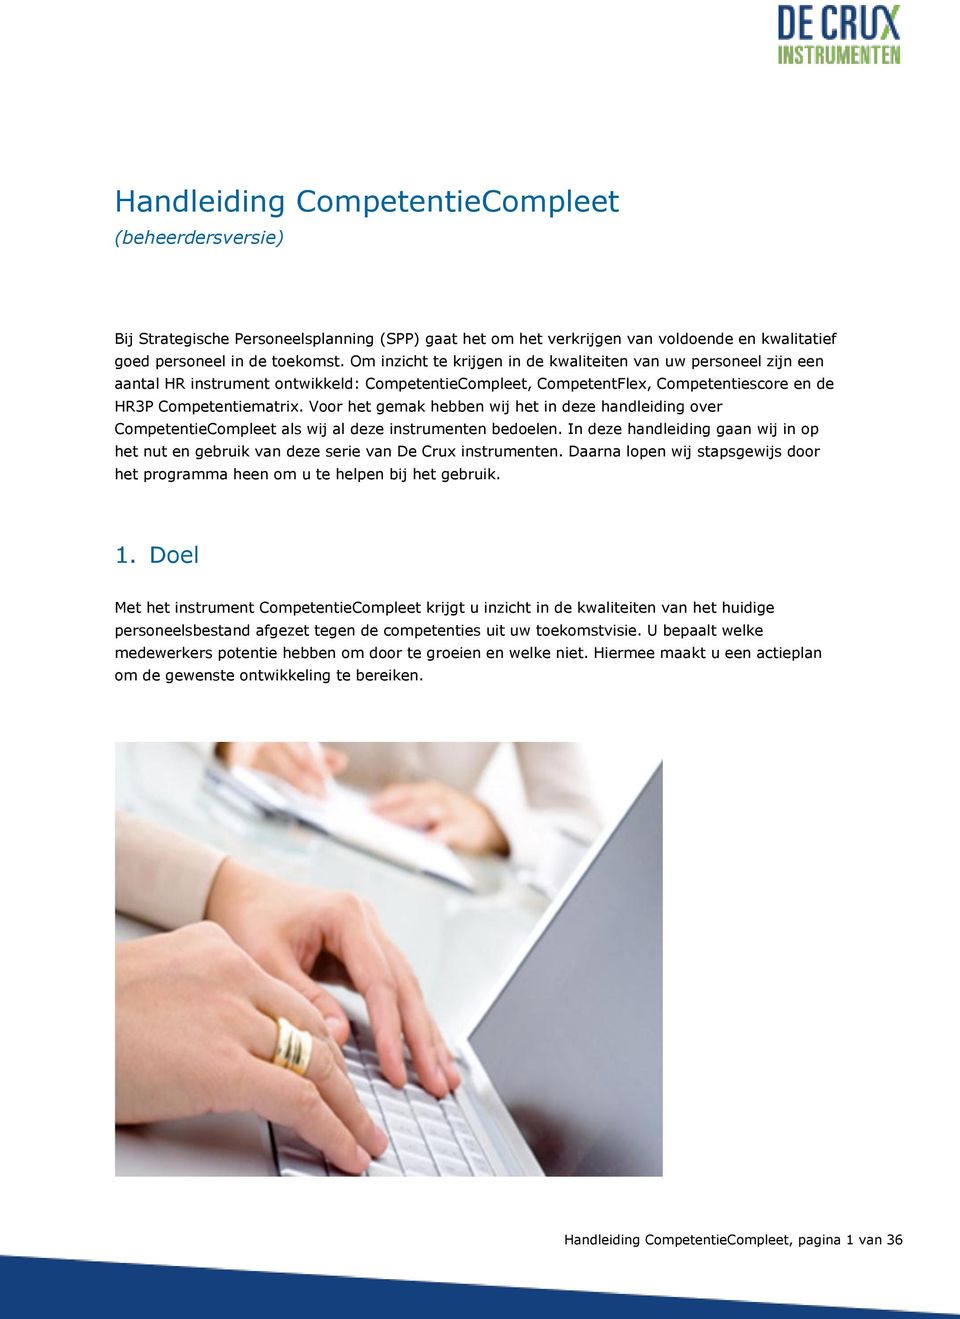 Voor het gemak hebben wij het in deze handleiding over CompetentieCompleet als wij al deze instrumenten bedoelen.